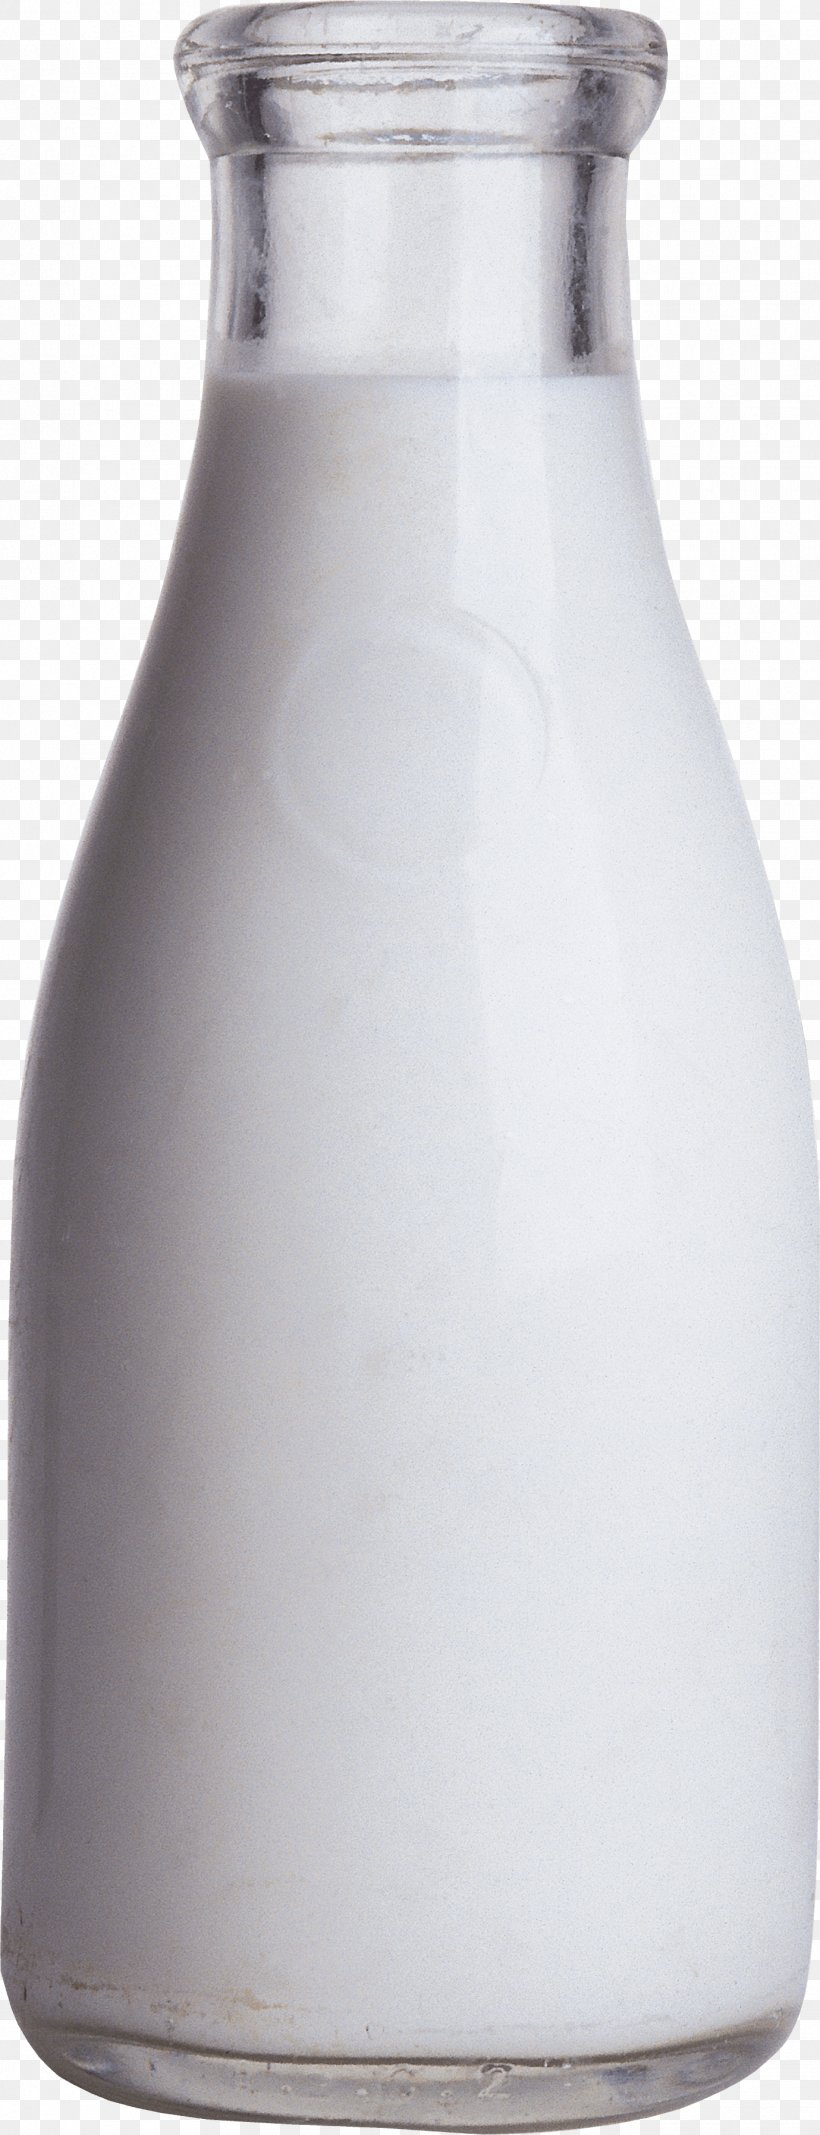 Milk Bottle Clip Art, PNG, 1379x3592px, Milk, Bottle, Glass, Glass Bottle, Jar Download Free